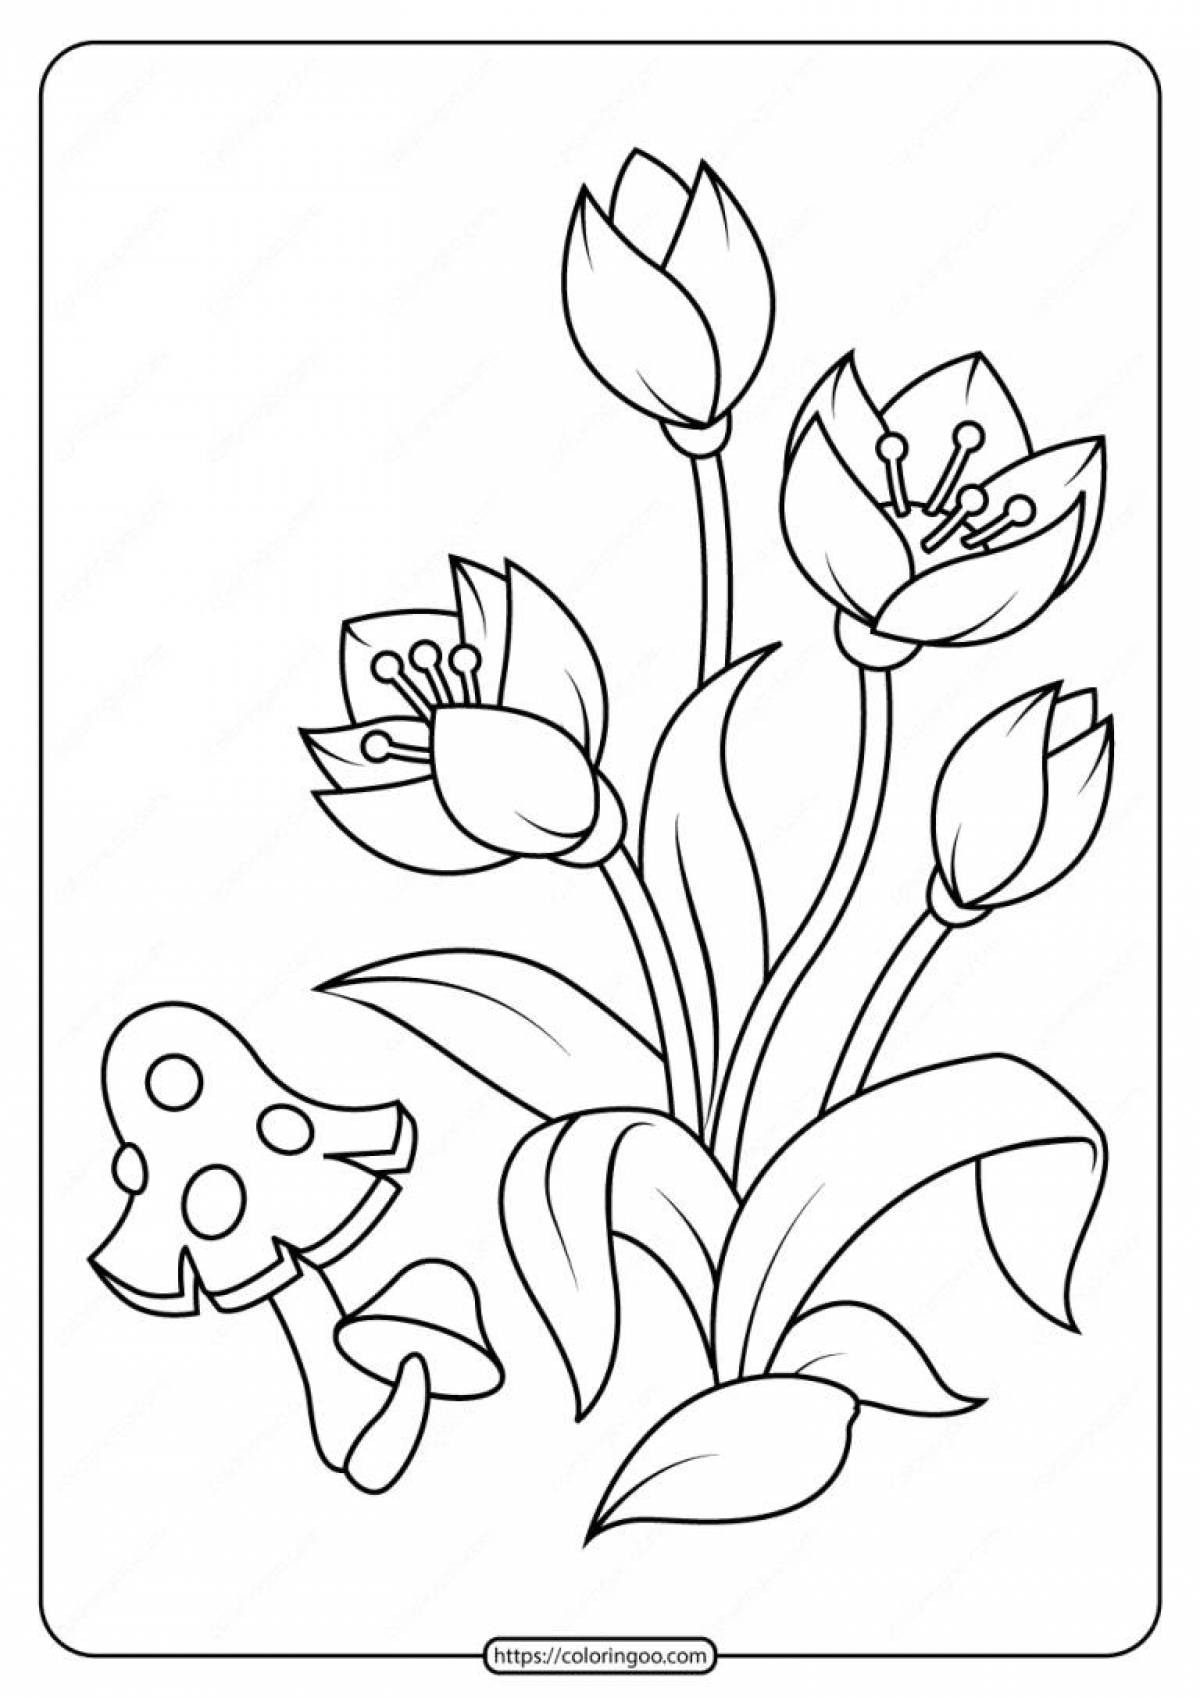 Яркая раскраска цветы для детей 4-5 лет